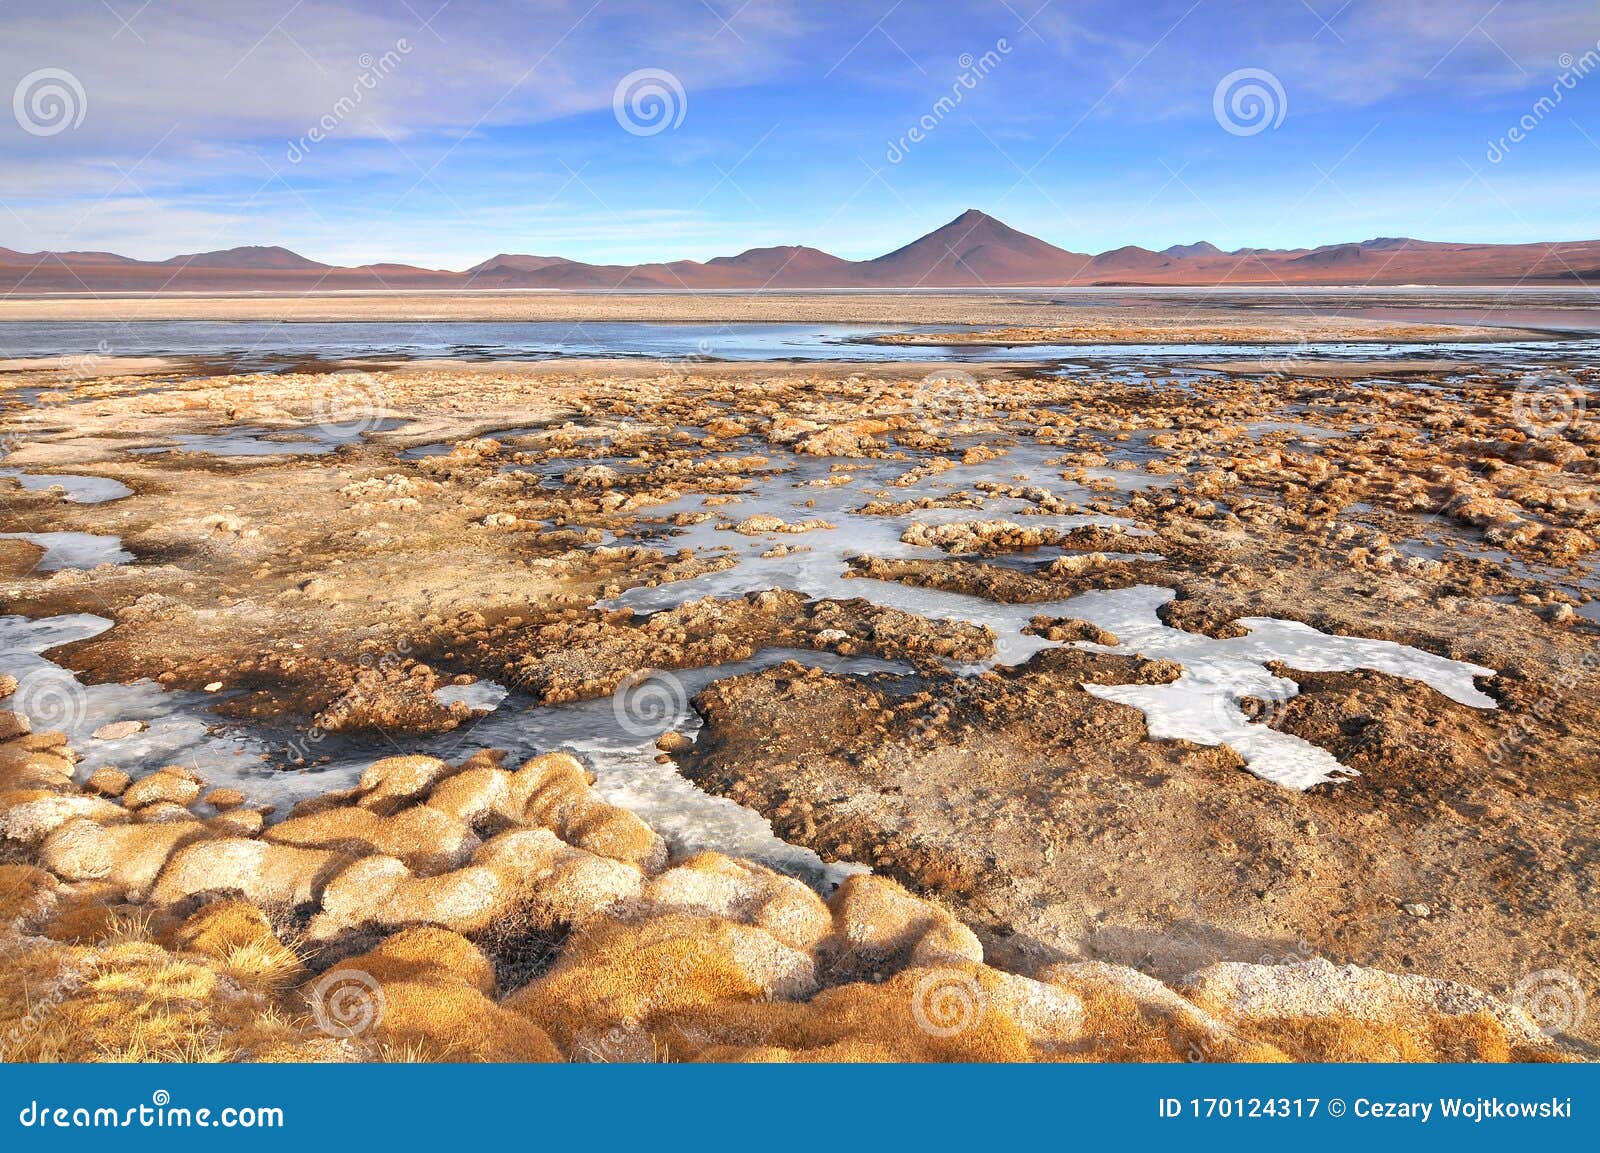 bolivia, laguna colorada, red lagoon, shallow salt lake in the southwest of the altiplano of bolivia, within eduardo avaroa andean